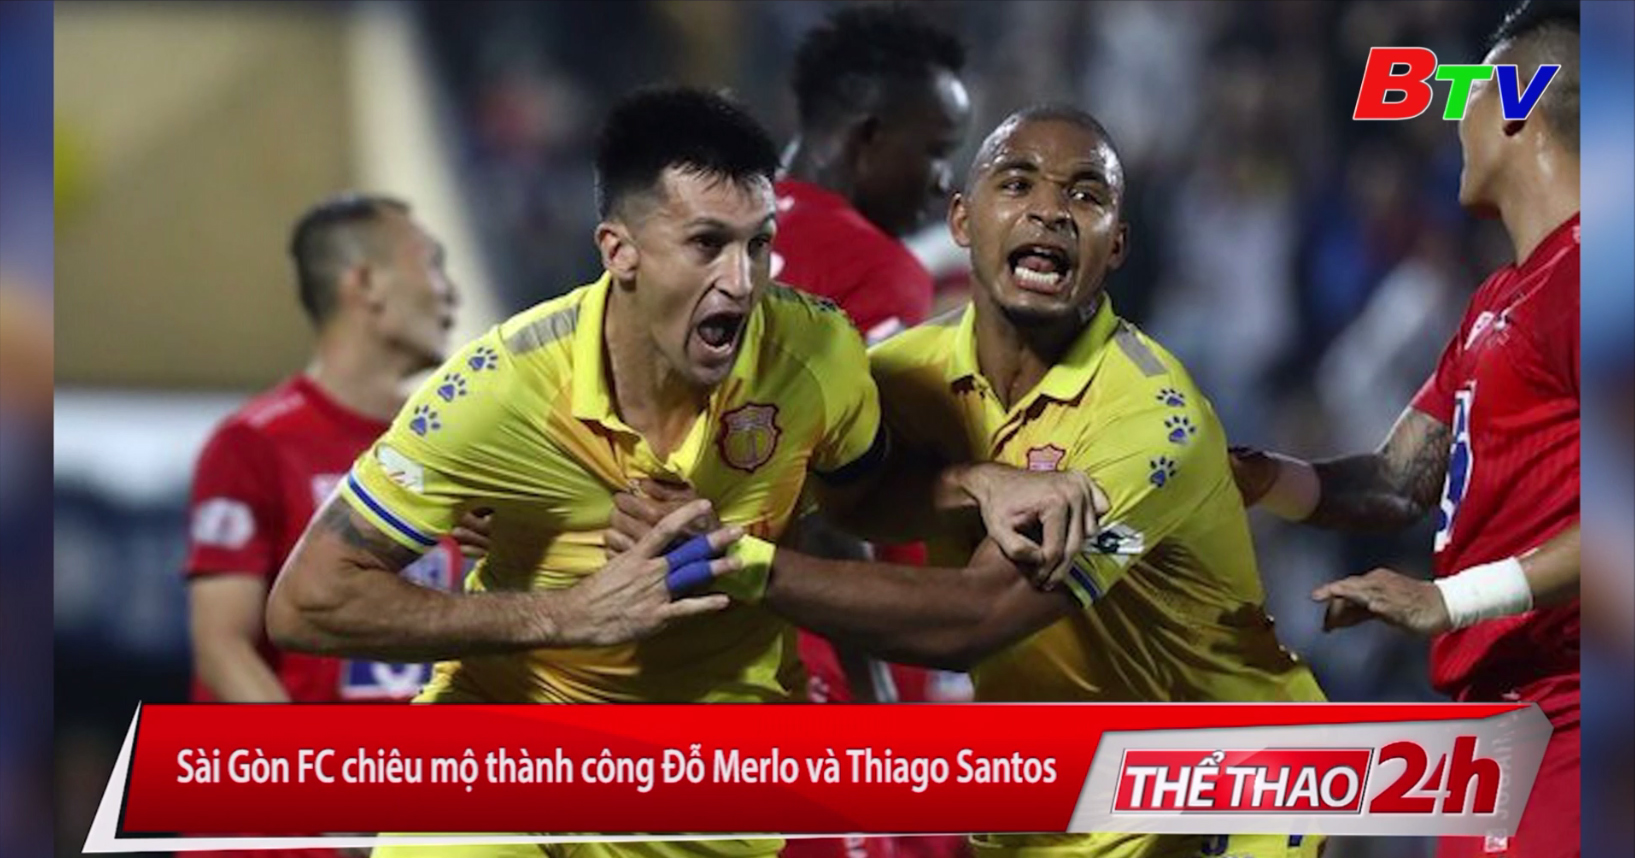 Sài Gòn FC chiêu mộ thành công Đỗ Merlo và Thiago Santos